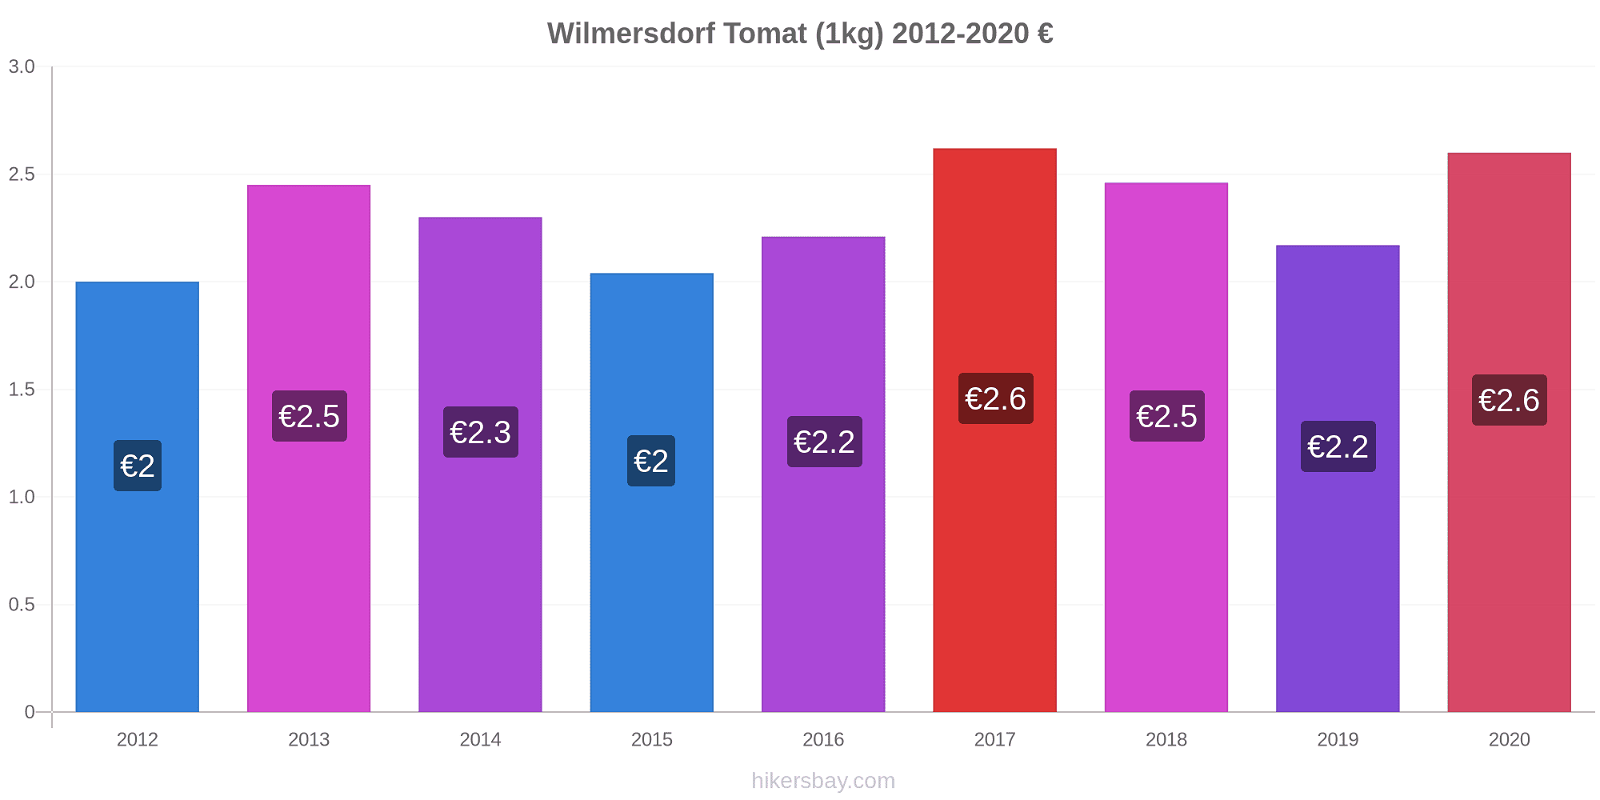 Wilmersdorf perubahan harga Tomat (1kg) hikersbay.com